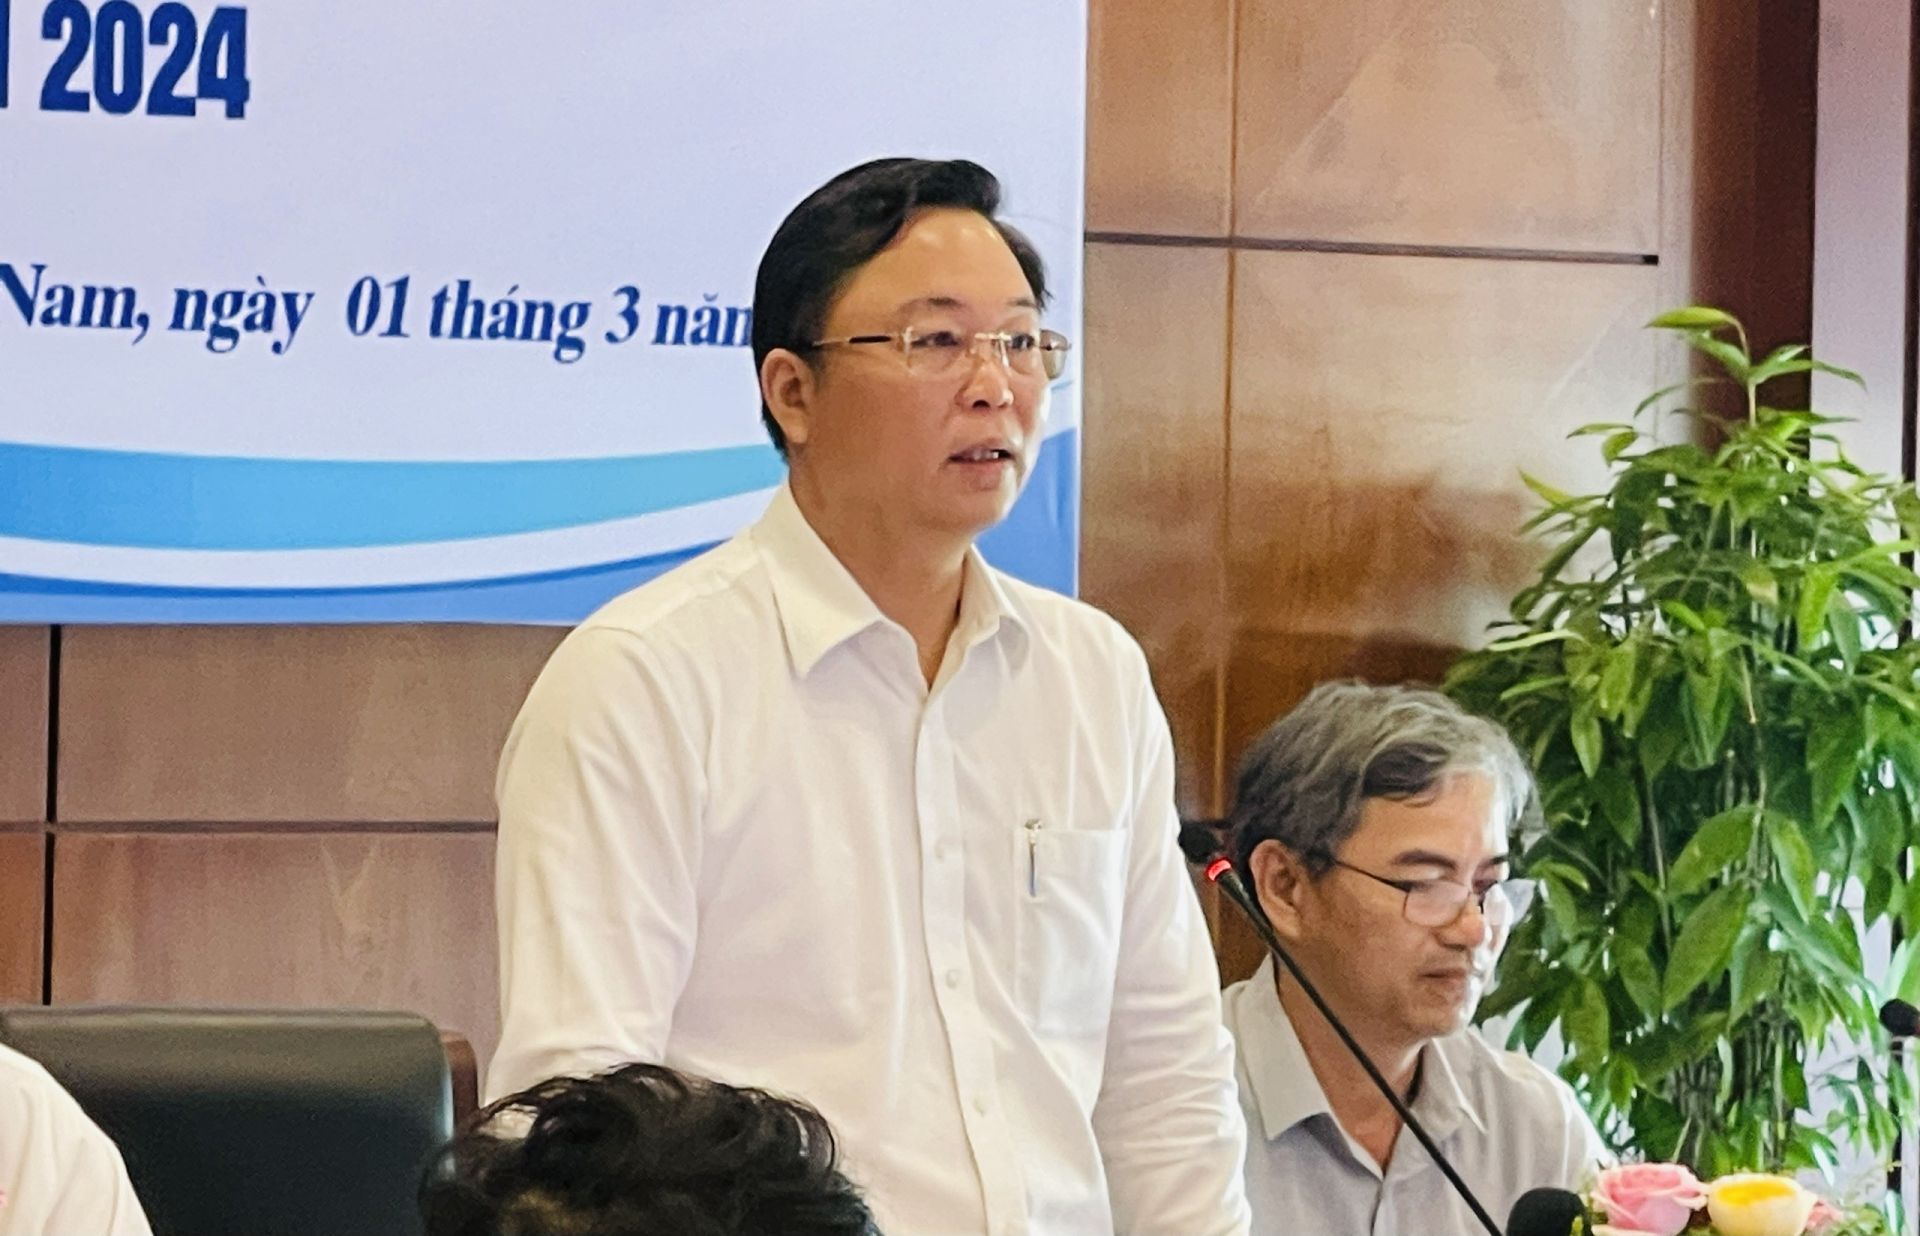 Chủ tịch Ủy ban Nhân dân tỉnh Quảng Nam Lê Trí Thanh phát biểu tại buổi họp báo